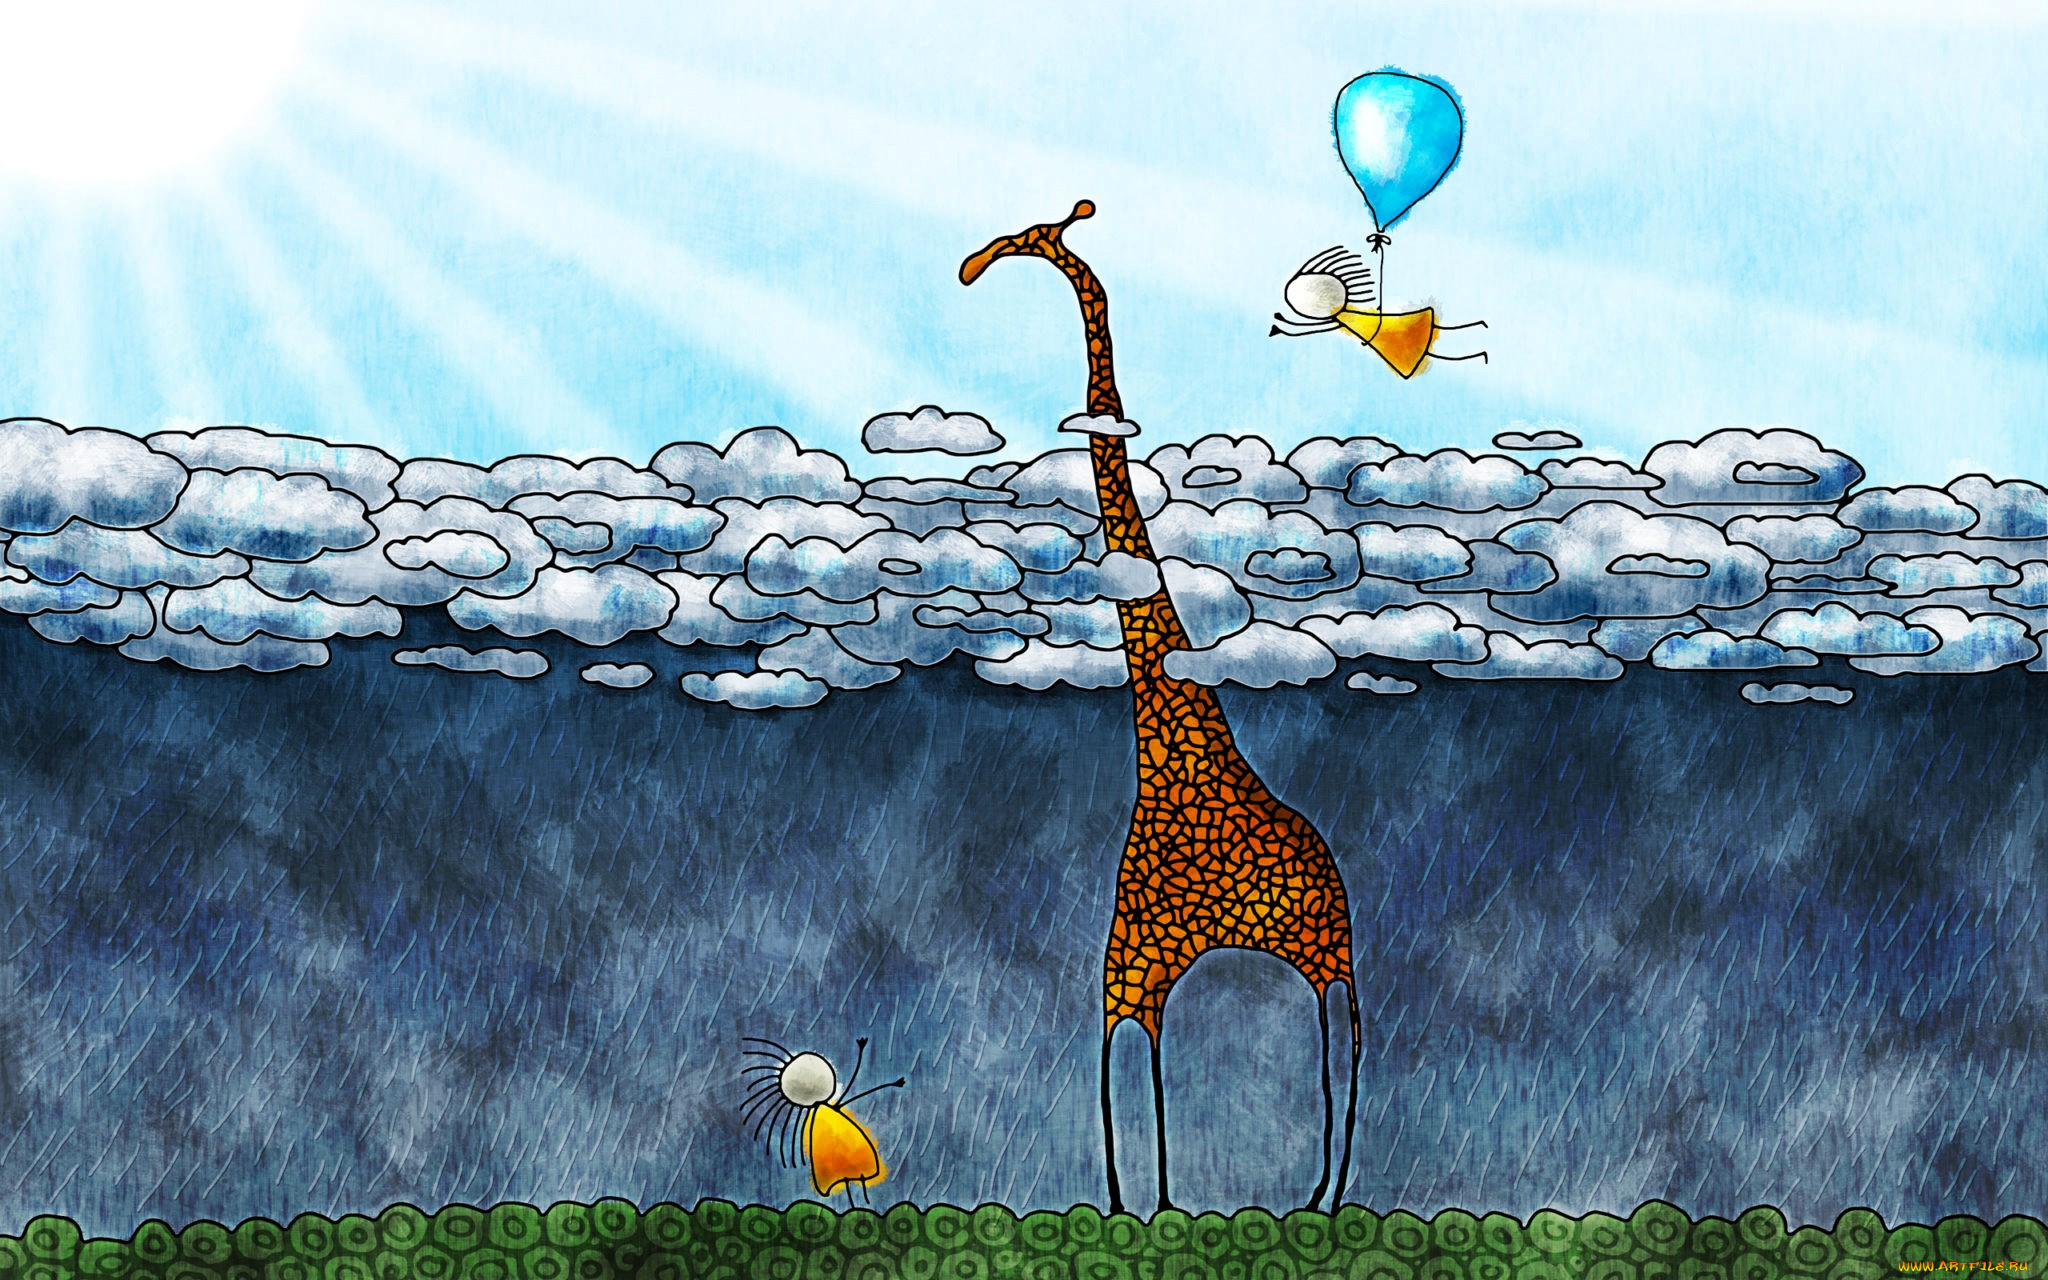 рисованное, vladstudio, жираф, дети, тучи, дождь, шарик